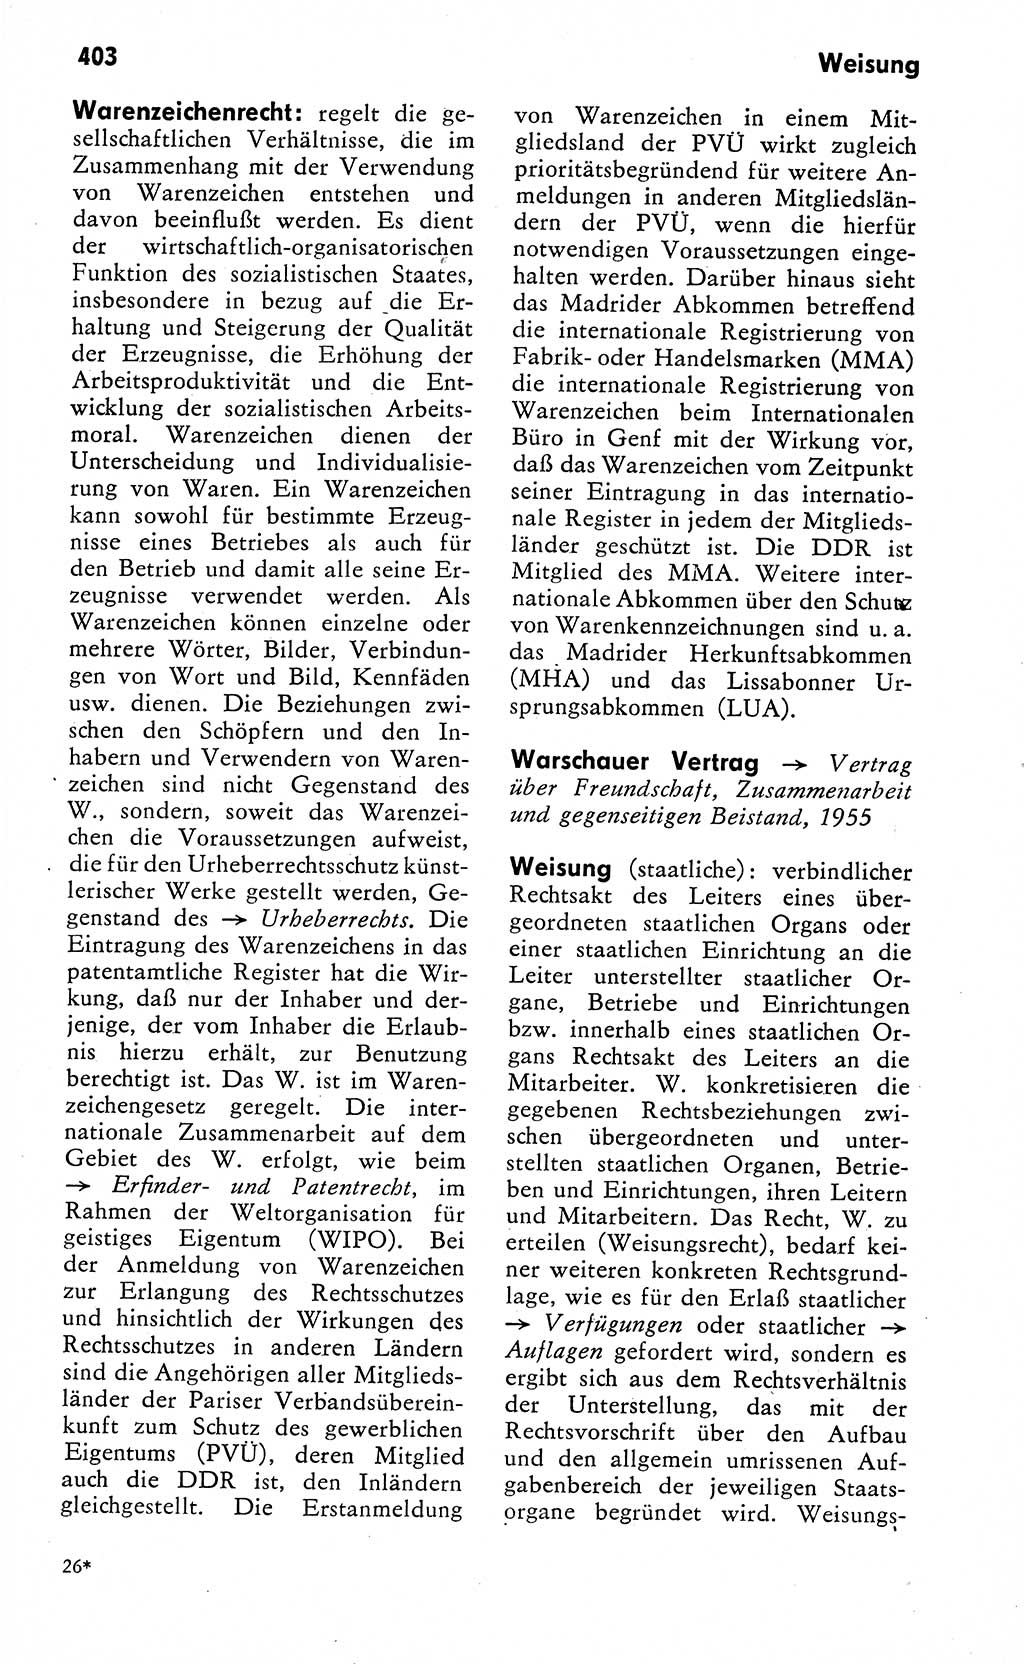 Wörterbuch zum sozialistischen Staat [Deutsche Demokratische Republik (DDR)] 1974, Seite 403 (Wb. soz. St. DDR 1974, S. 403)